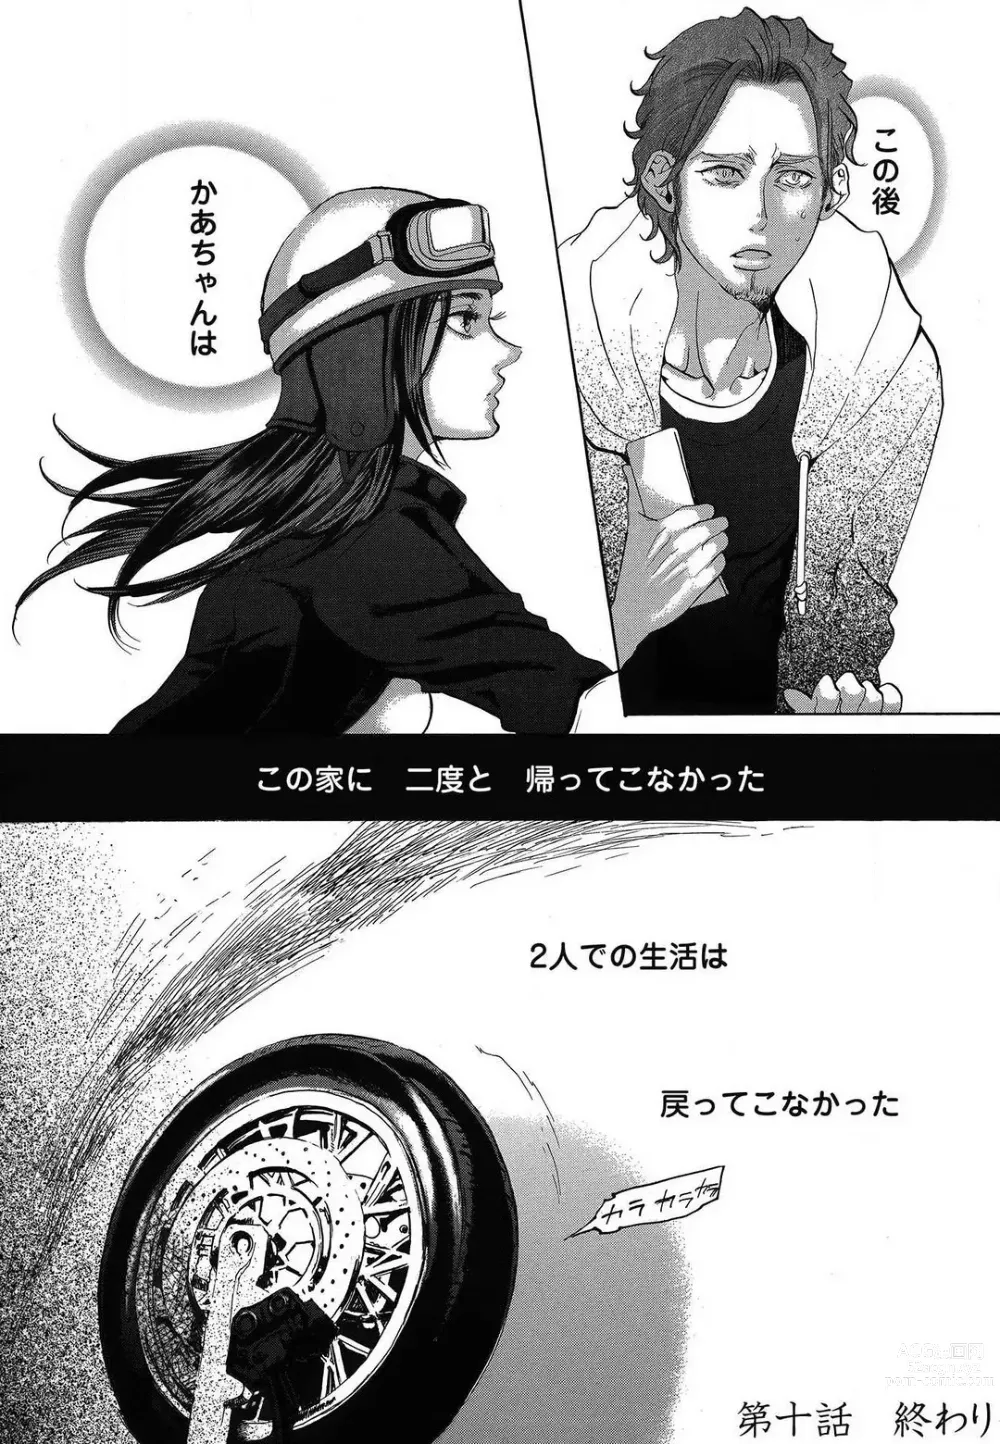 Page 486 of manga Kizutsukeru you ni Aishiaimashou 1-10